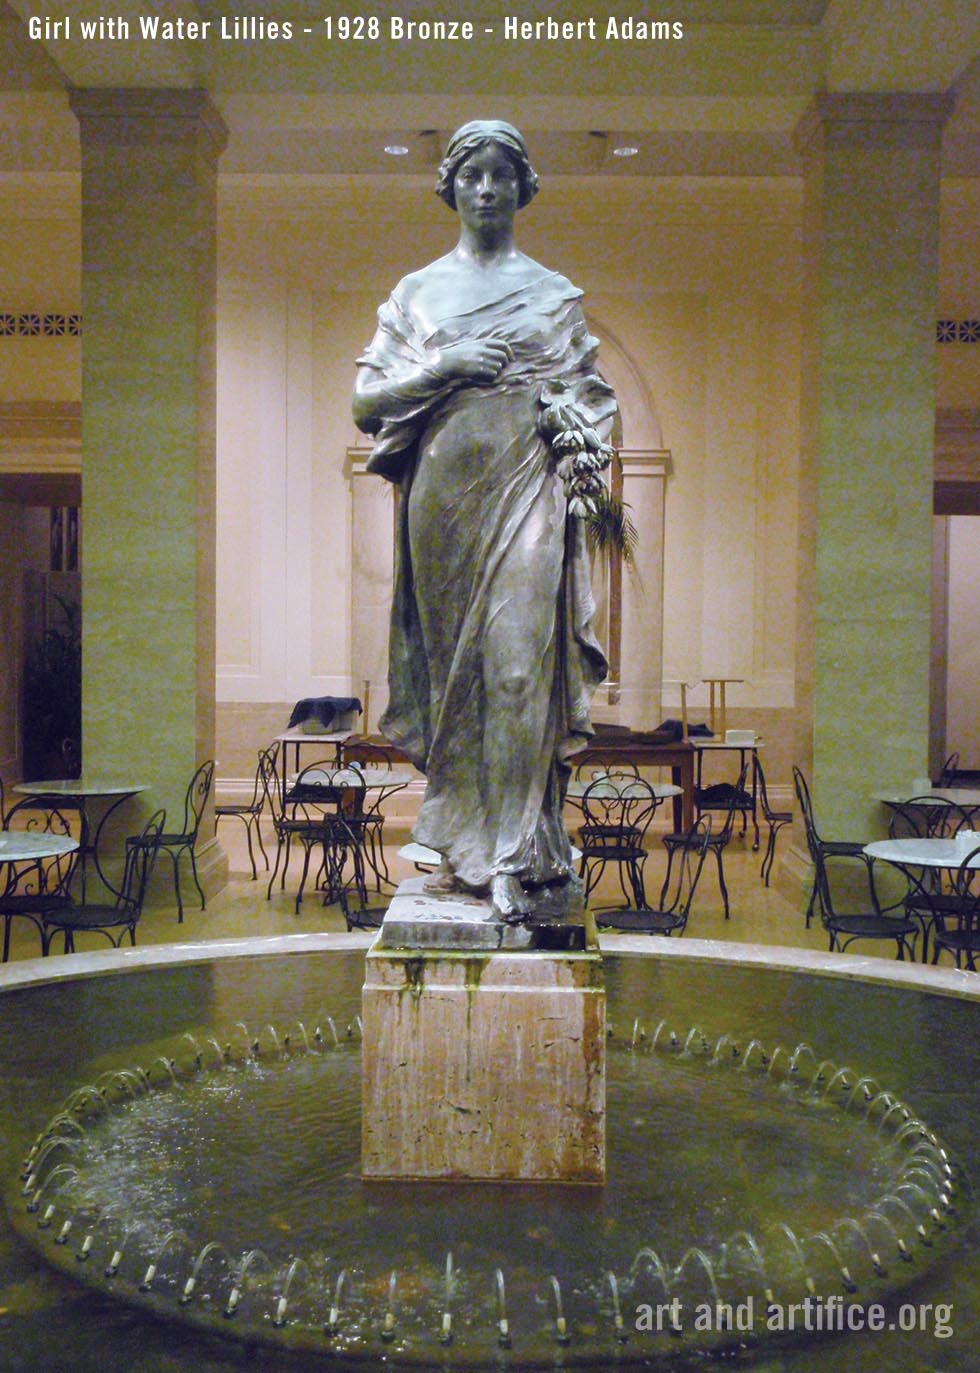 Girl with Water Lillies - 1928 Bronze - Herbert Adams